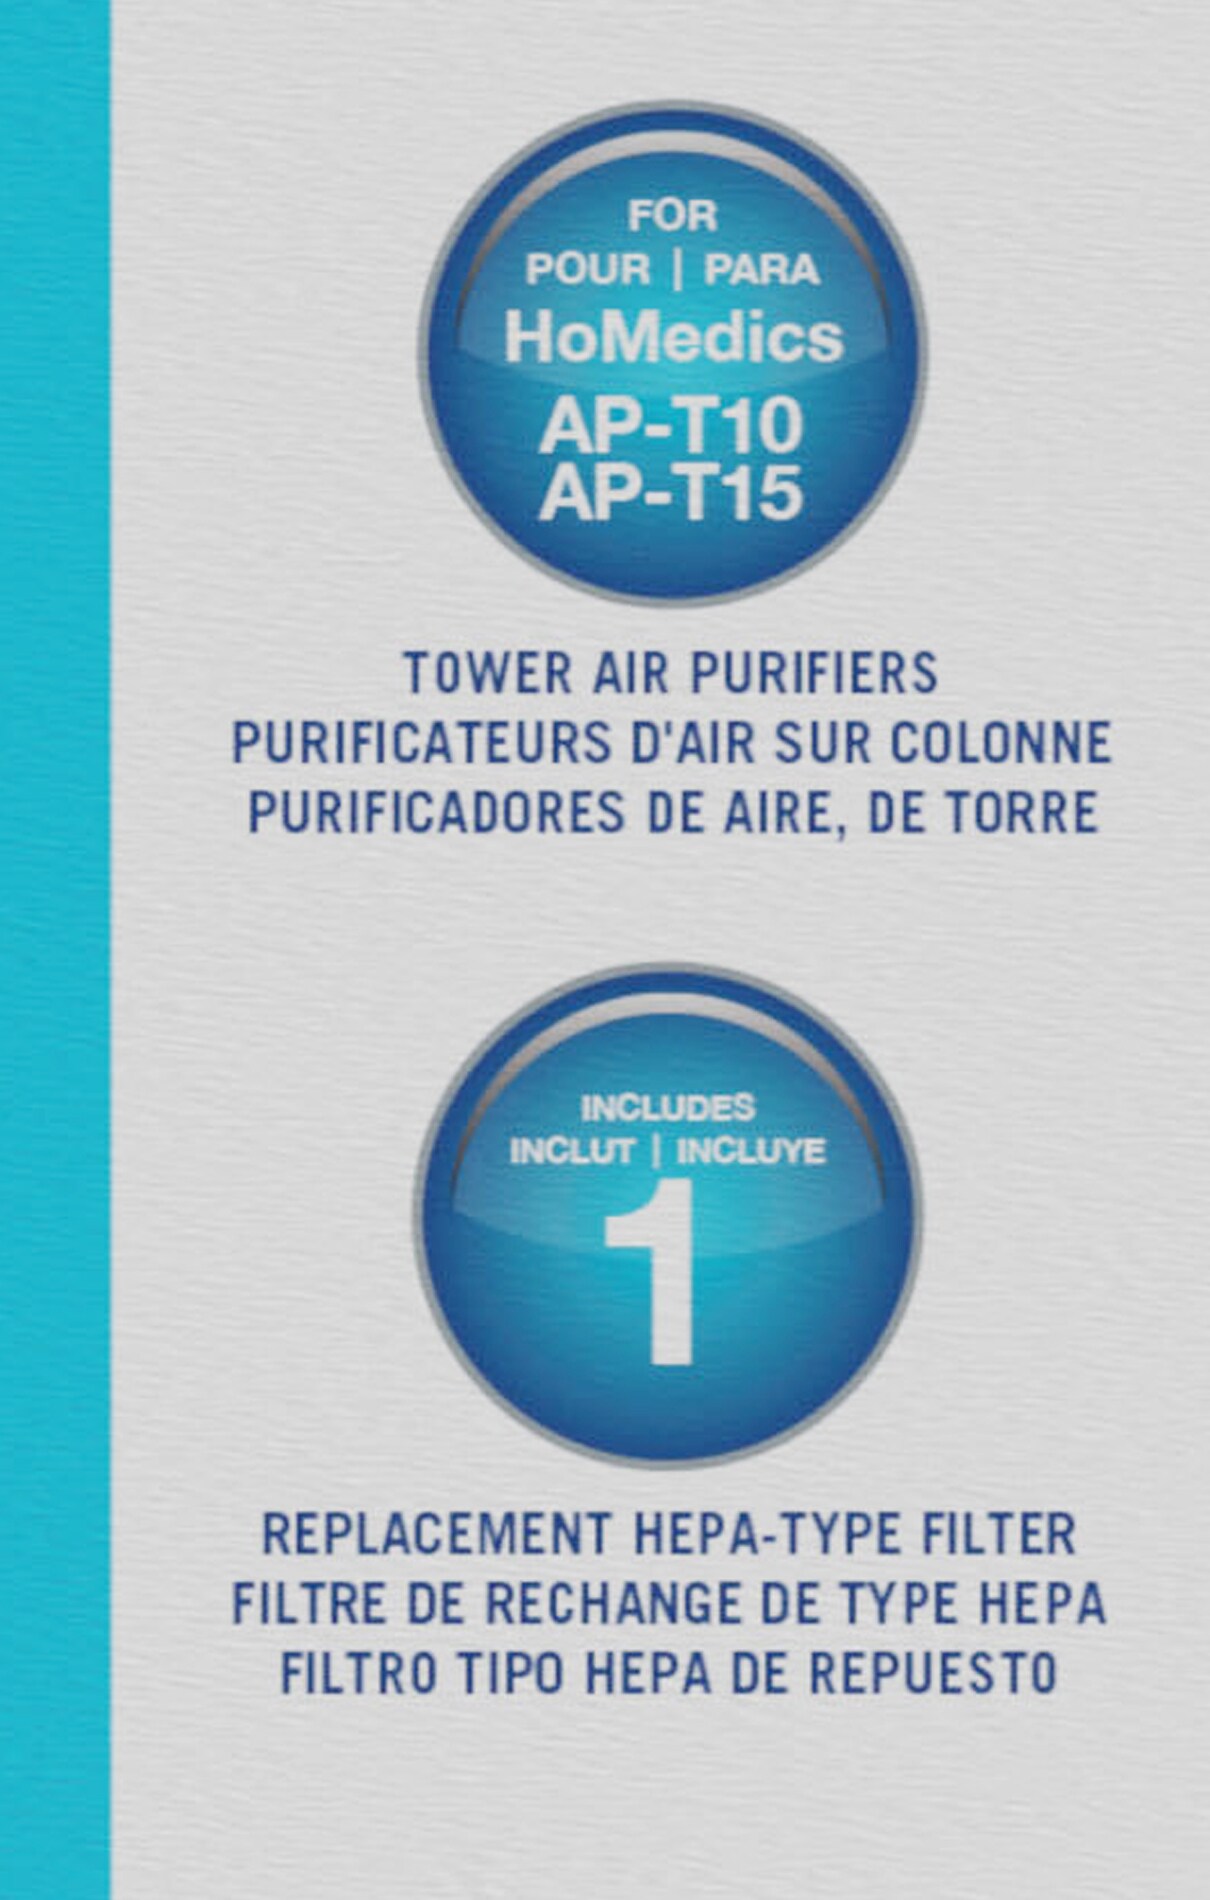 Replacement 360 HEPA Filter for AP-T15, AP-T10